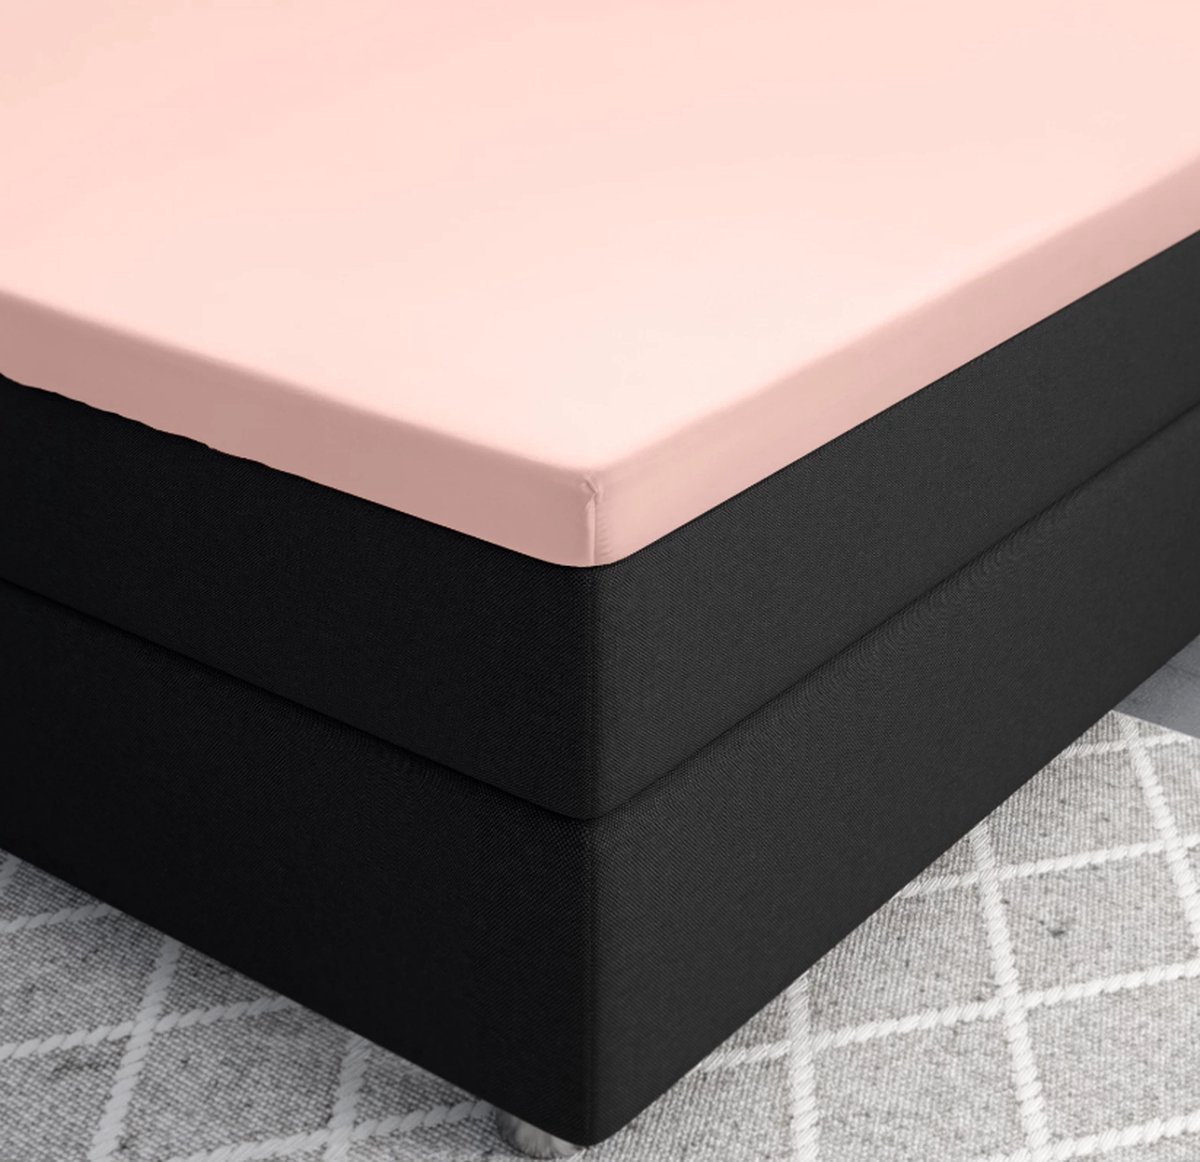 Premium katoen/satijn hoeslaken roze - 80x200 (eenpersoons) - zacht en ademend - luxe en chique uitstraling - subtiele glans - ideale pasvorm